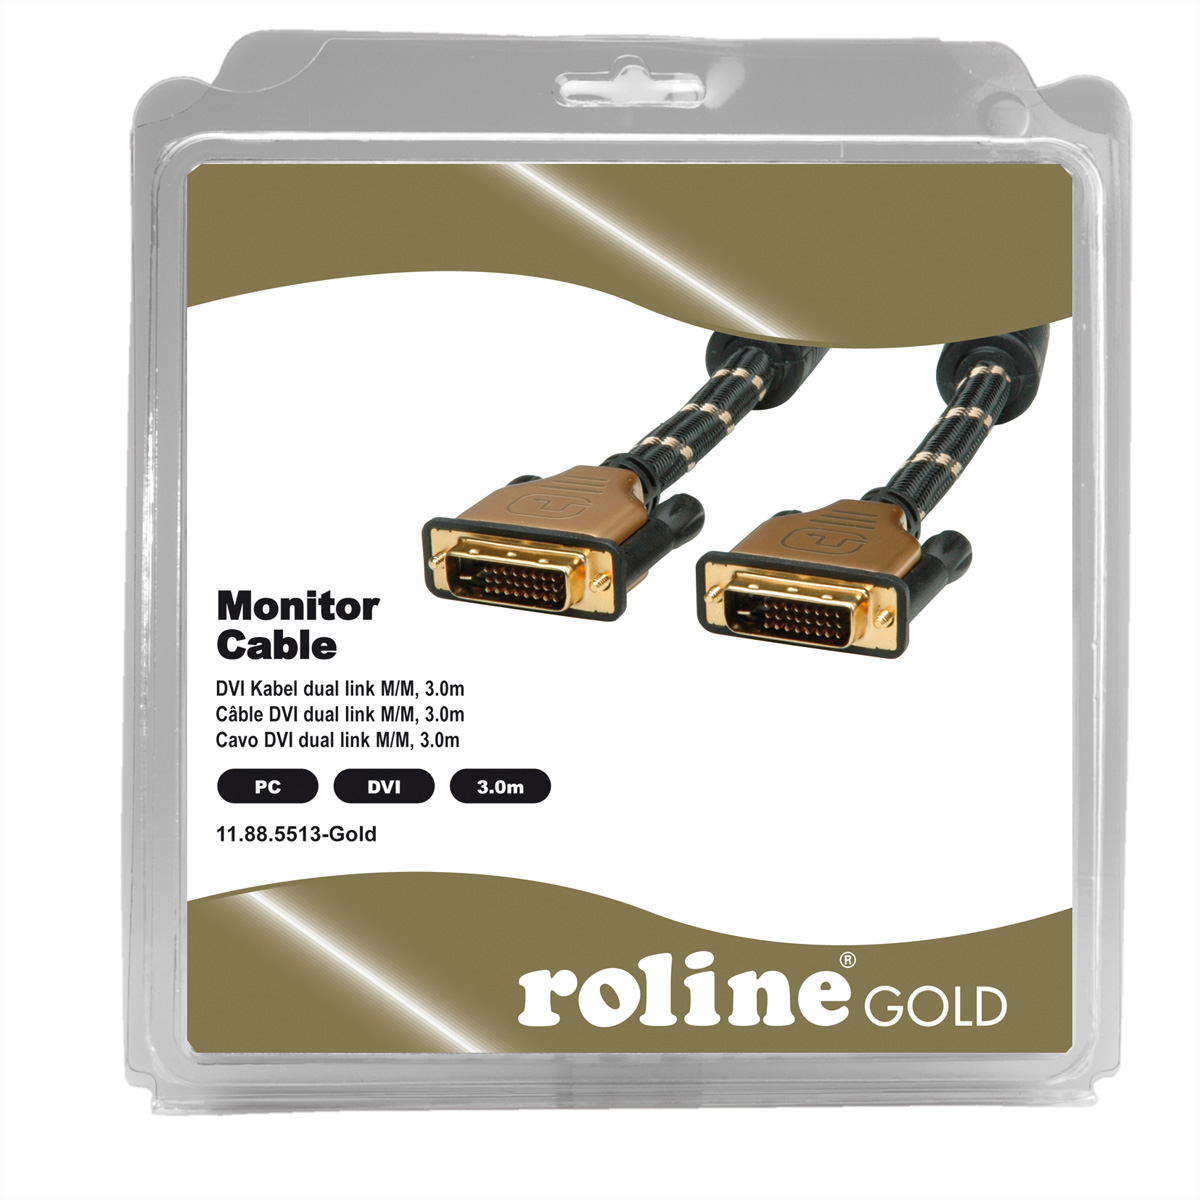 GOLD ST-ST, (dual link), m link, Monitorkabel ROLINE dual (24+1) DVI-Kabel 3 DVI,